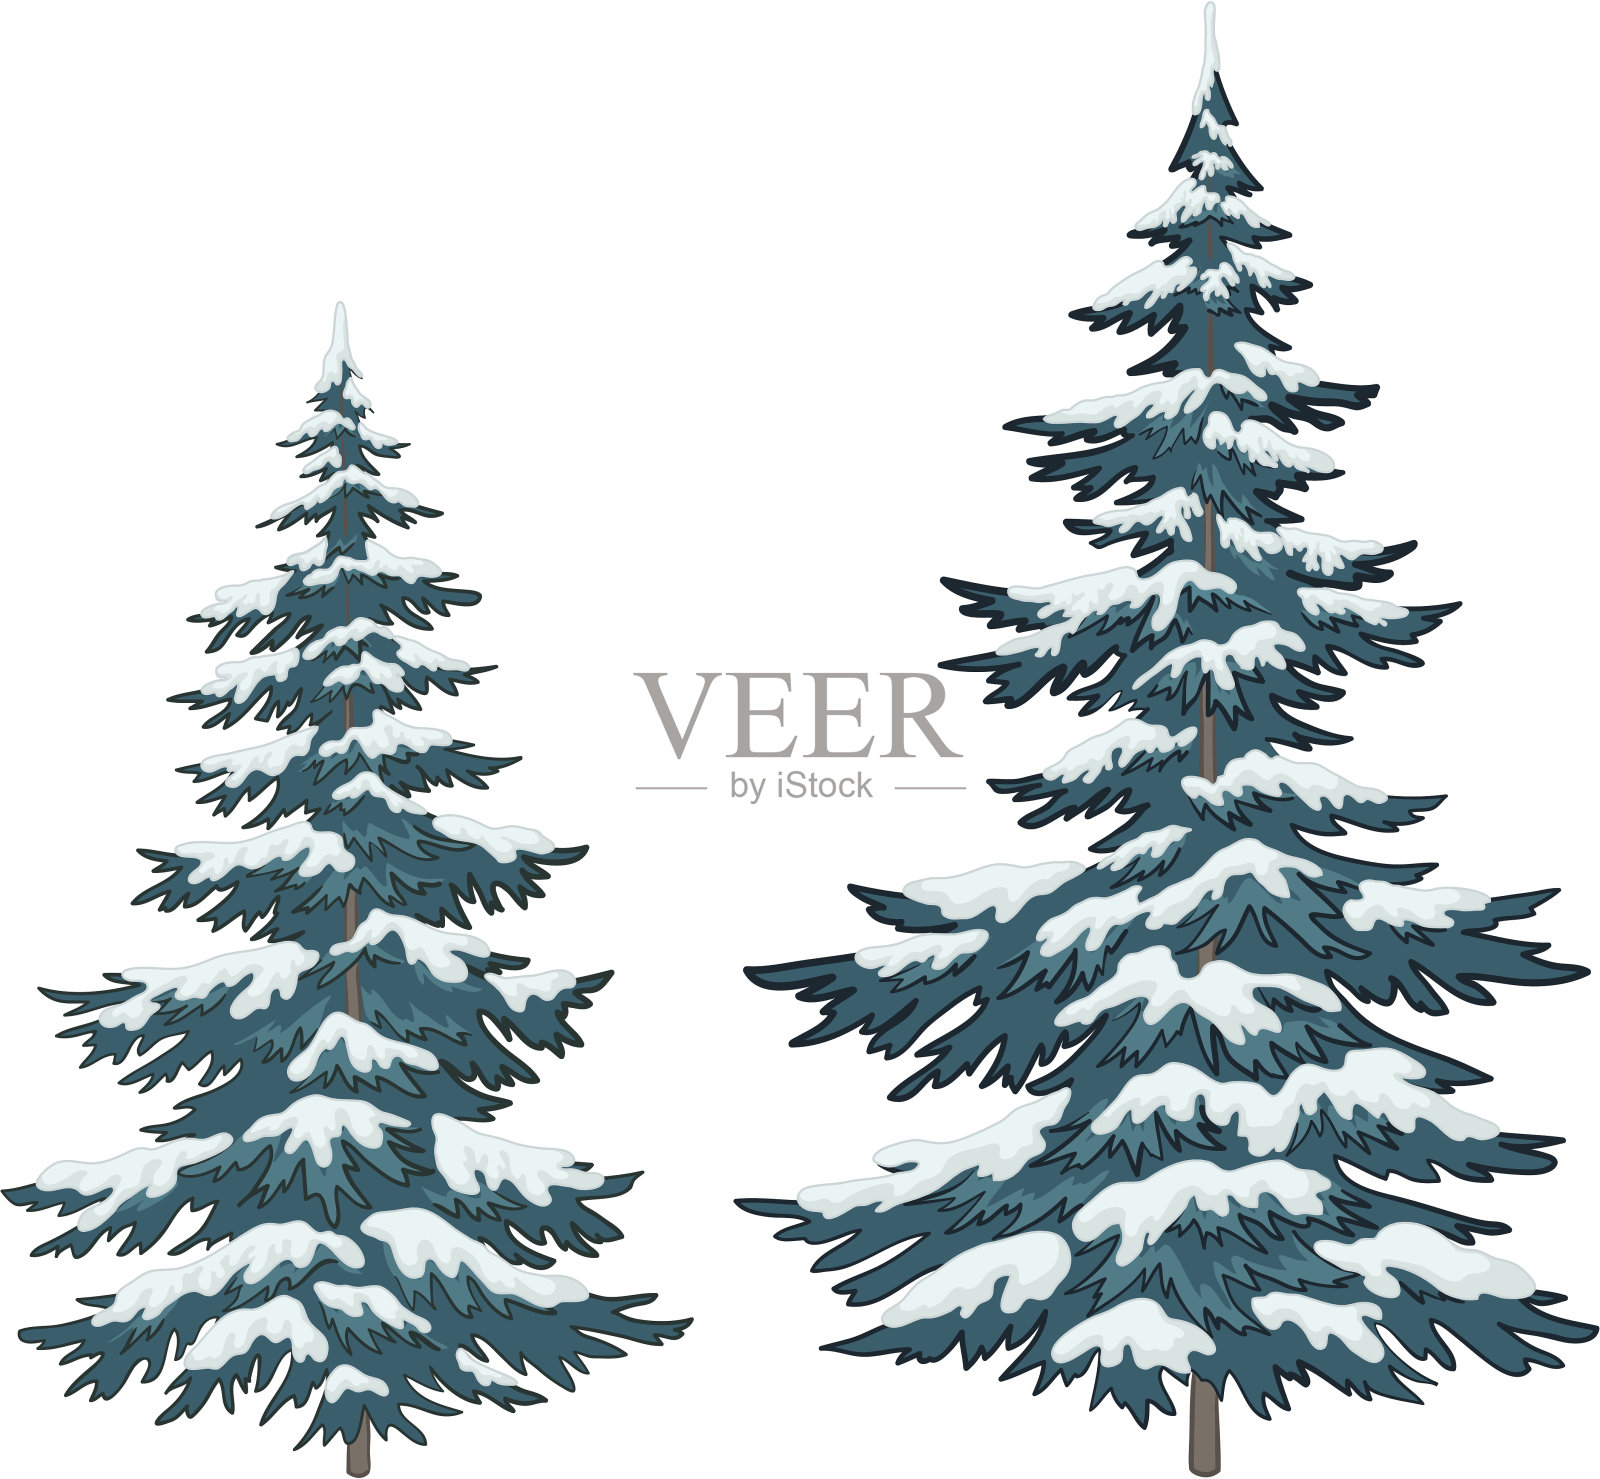 雪下的圣诞树插画图片素材